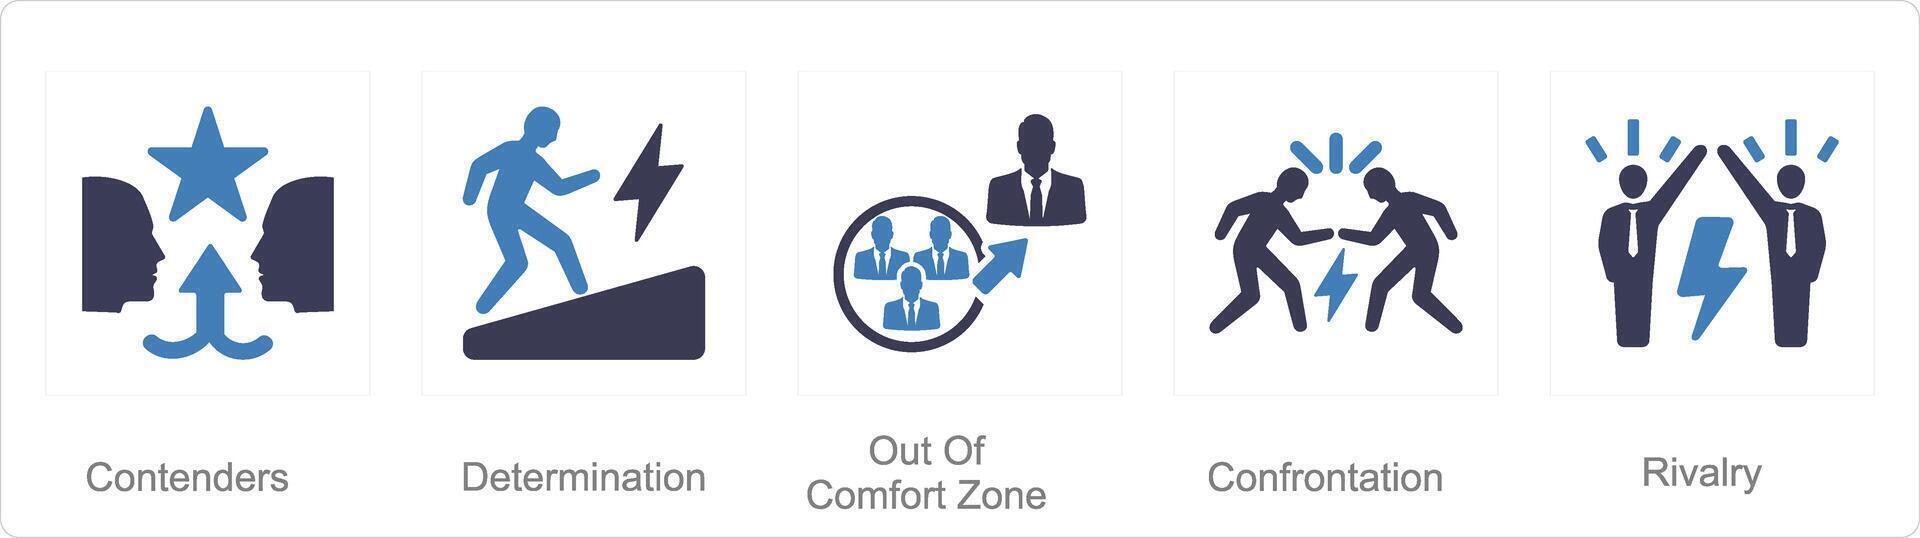 uma conjunto do 5 desafio ícones Como contendores, determinação, Fora do conforto zona vetor